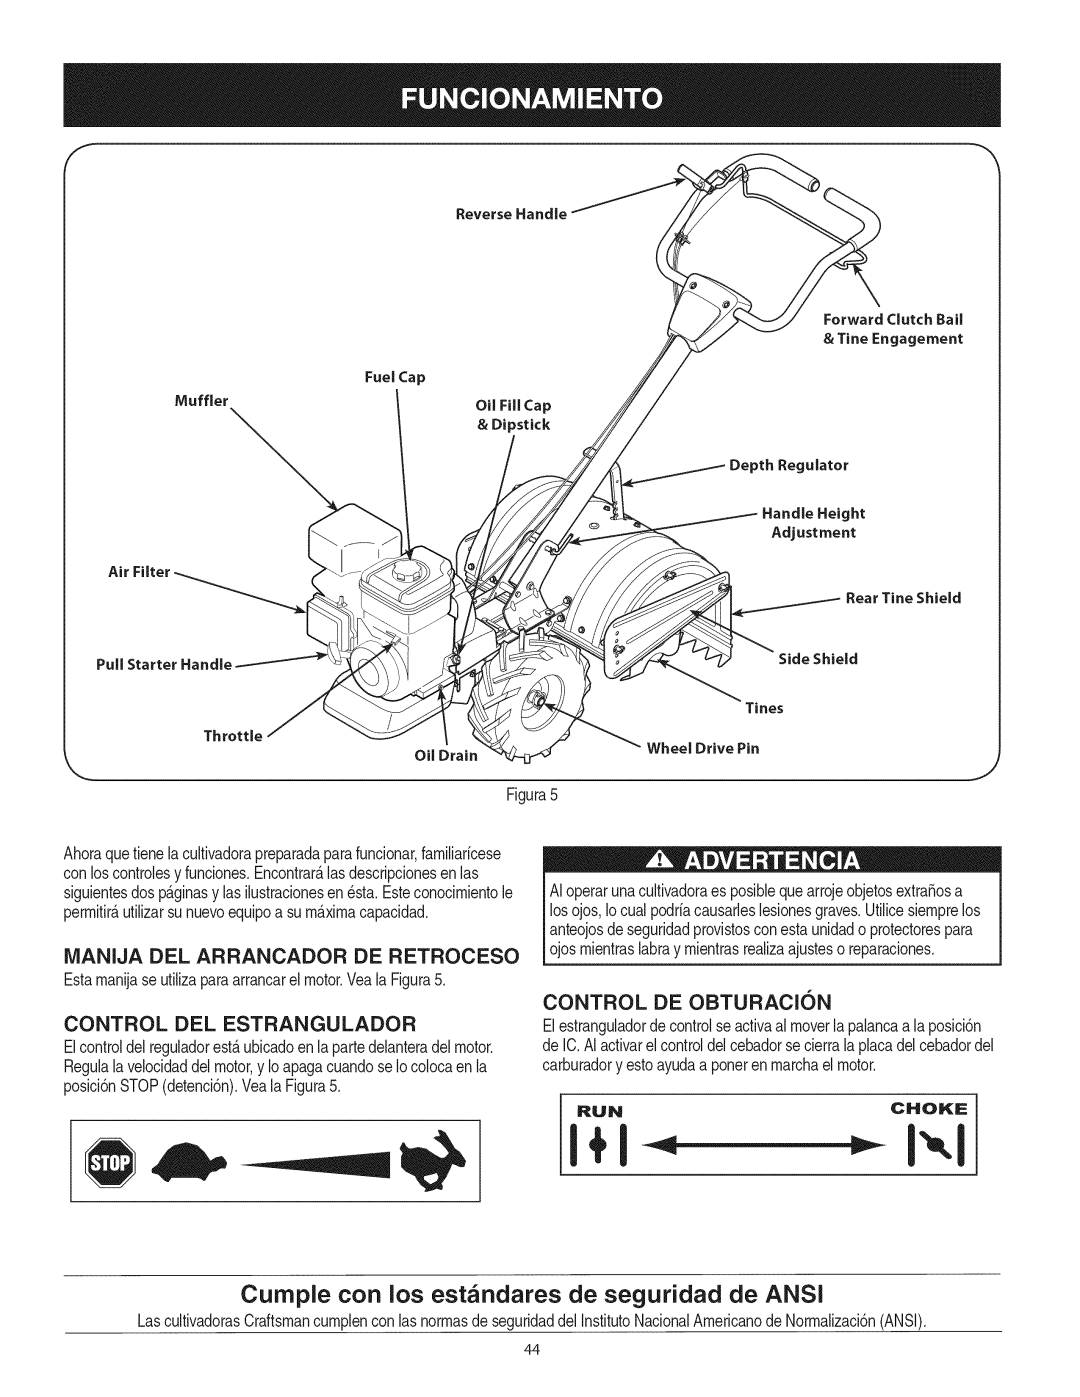 Craftsman 247.29931 manual Cumple con los estandares de seguridad de ANSI, iVlANIJA DEL ARRANCADOR DE RETROCESO, Runchoke 